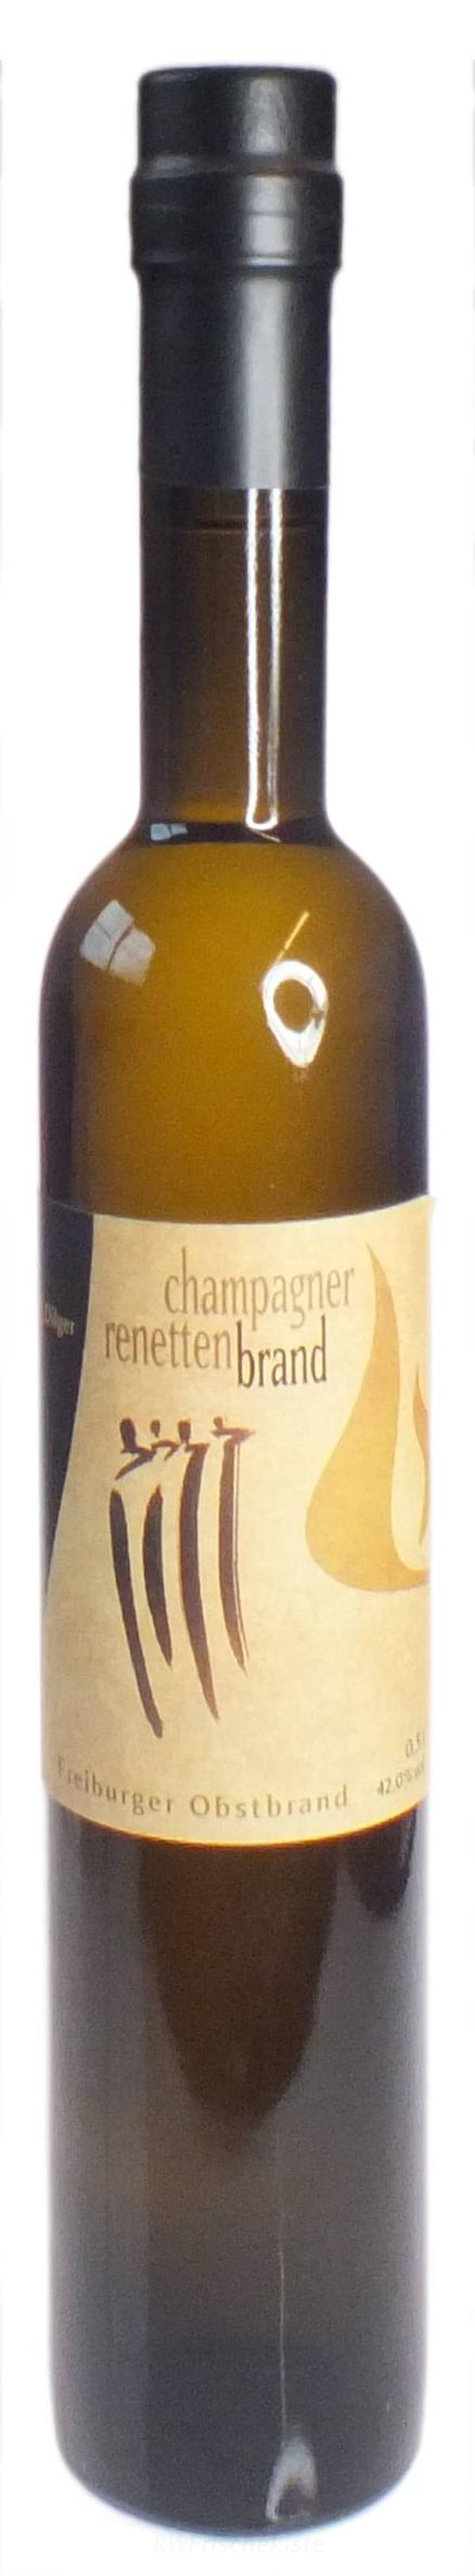 Produktfoto zu Champagner-Renetten-Brand